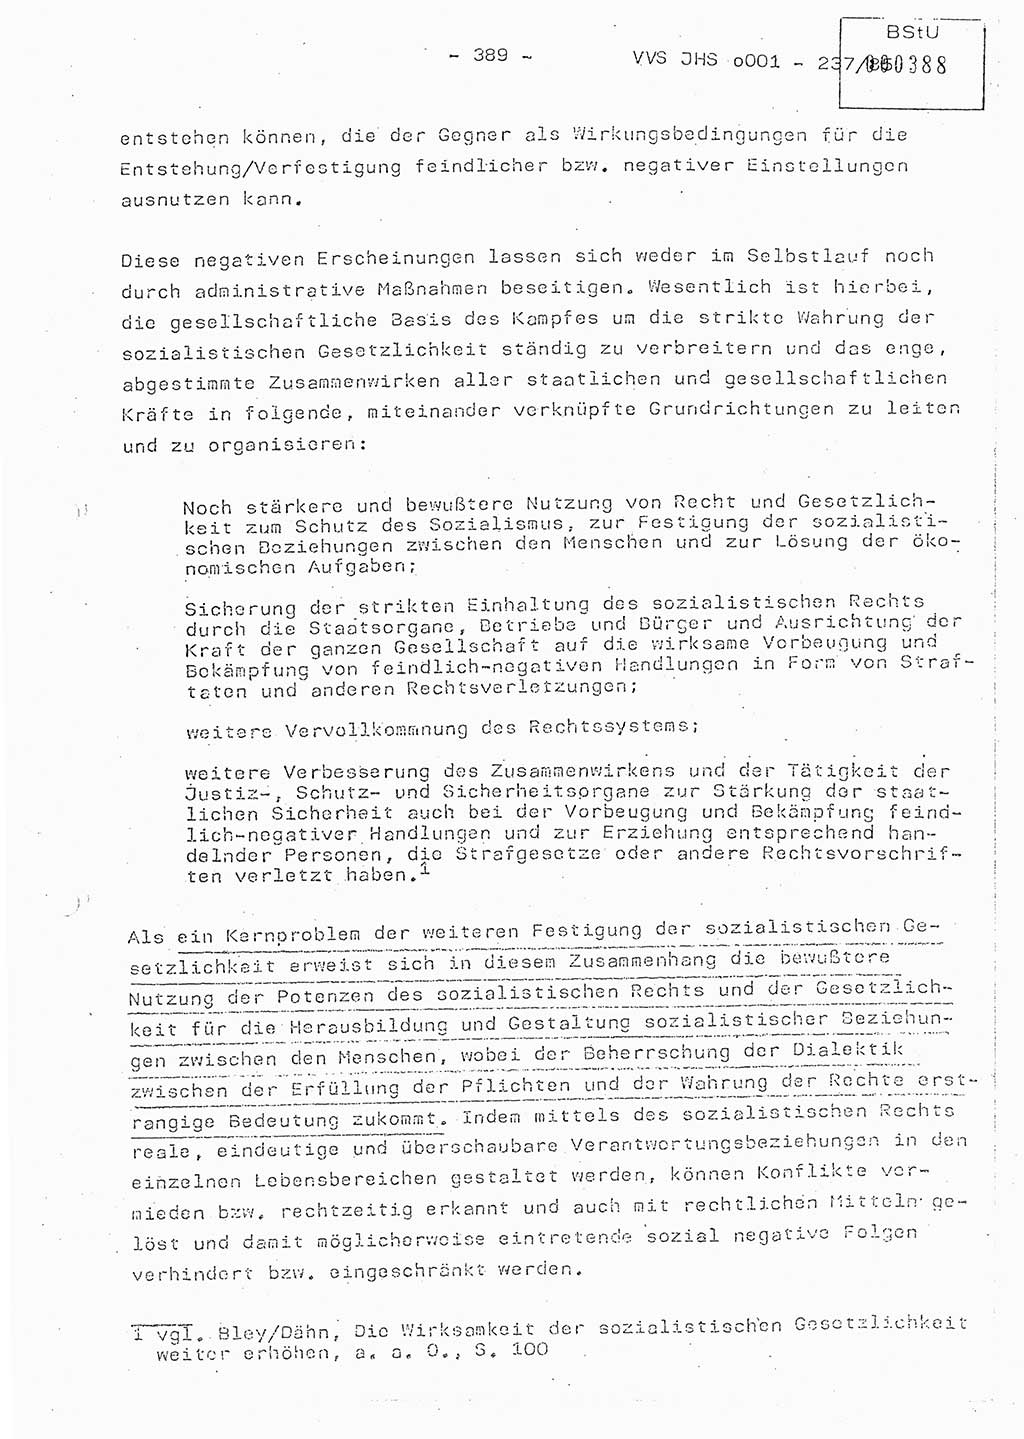 Dissertation Oberstleutnant Peter Jakulski (JHS), Oberstleutnat Christian Rudolph (HA Ⅸ), Major Horst Böttger (ZMD), Major Wolfgang Grüneberg (JHS), Major Albert Meutsch (JHS), Ministerium für Staatssicherheit (MfS) [Deutsche Demokratische Republik (DDR)], Juristische Hochschule (JHS), Vertrauliche Verschlußsache (VVS) o001-237/85, Potsdam 1985, Seite 389 (Diss. MfS DDR JHS VVS o001-237/85 1985, S. 389)